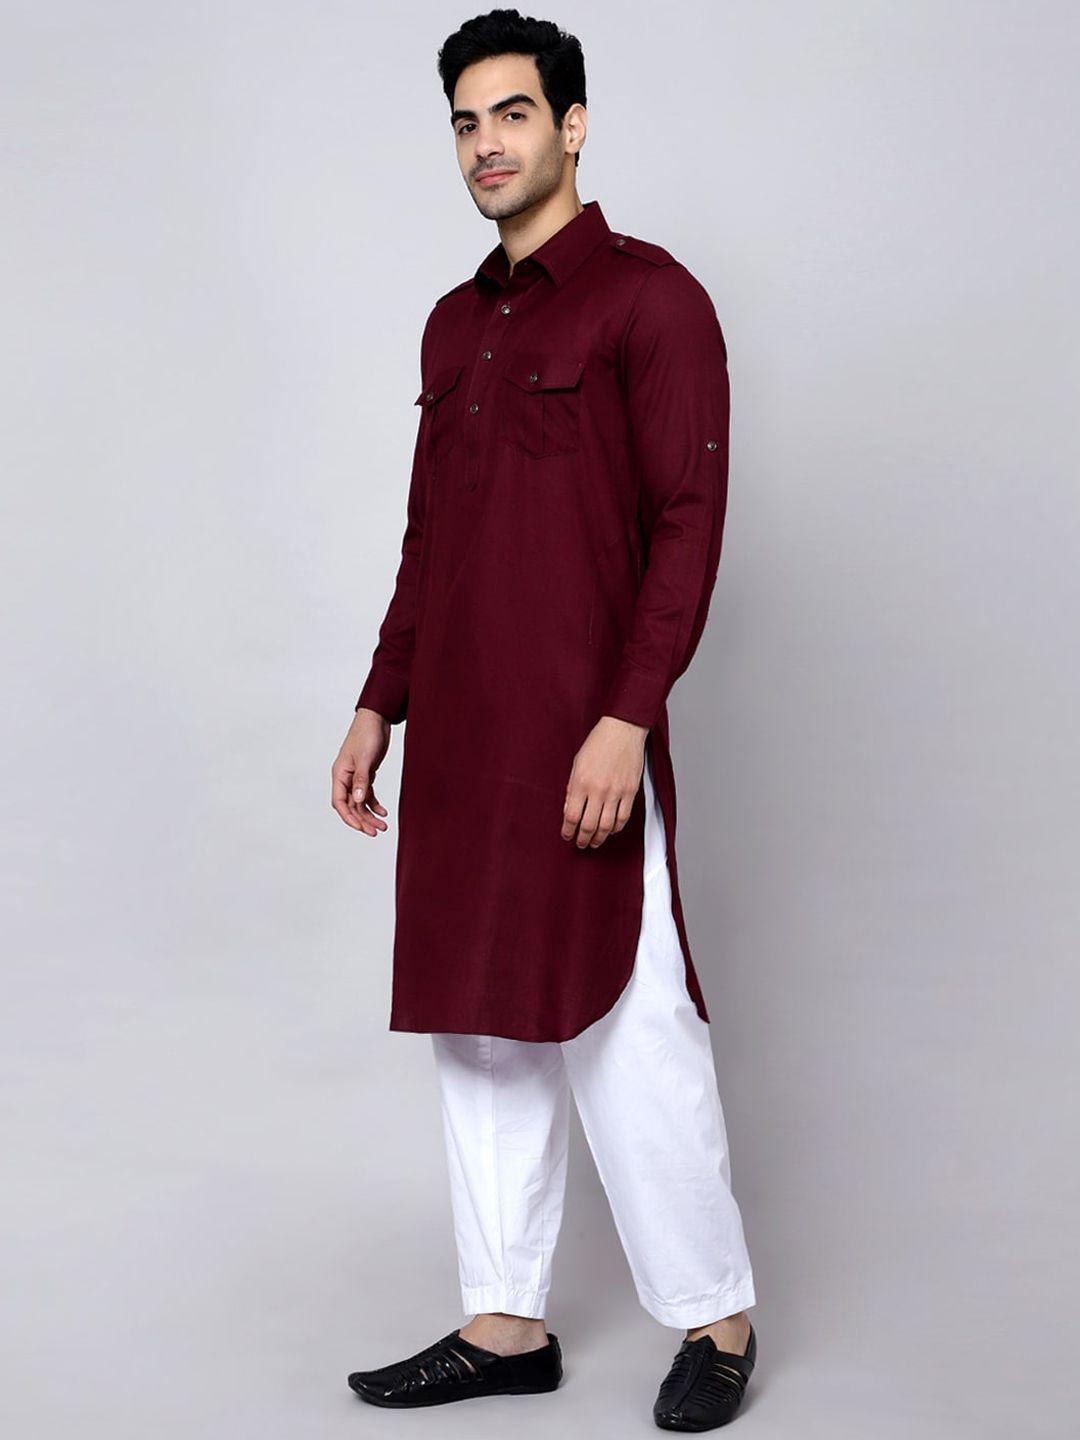 sultan the king of kurta shirt collar straight kurta with pyjamas